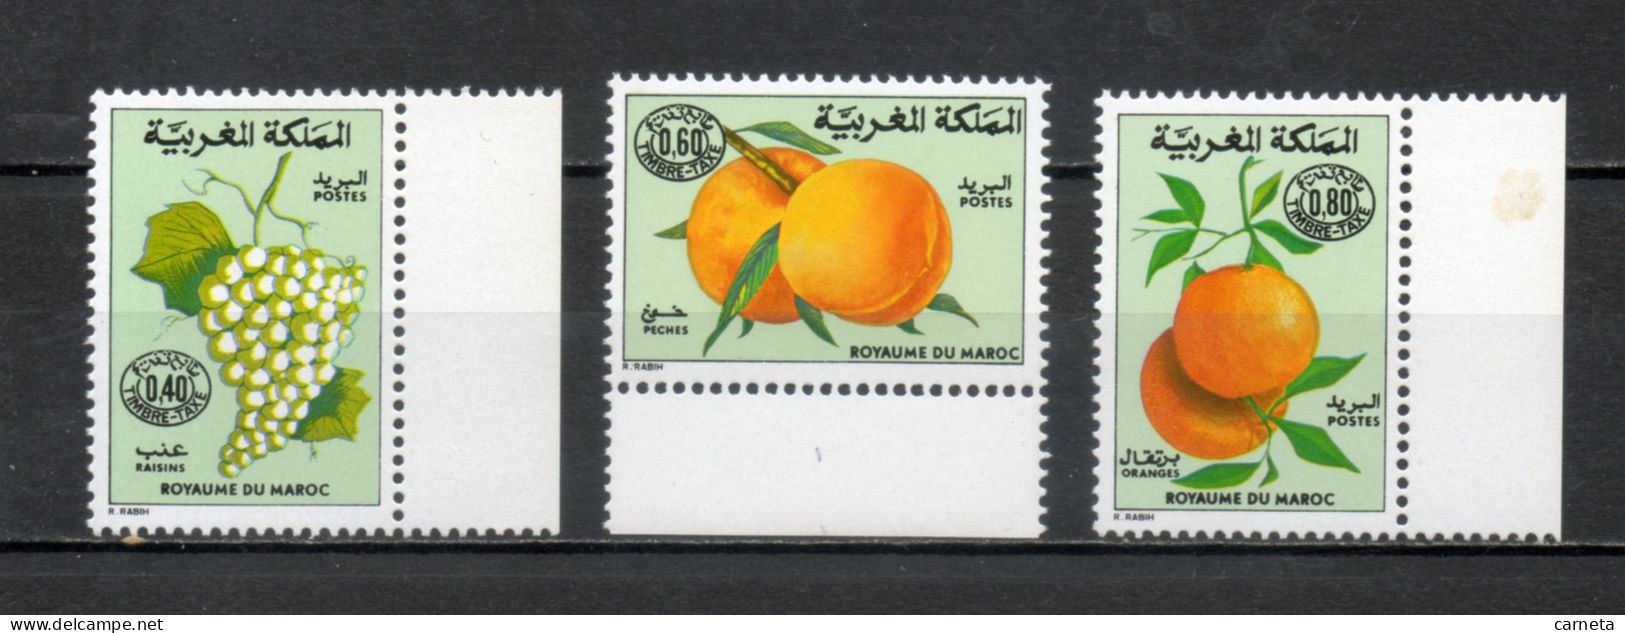 MAROC TAXE  N°  64 à 66    NEUFS SANS CHARNIERE  COTE 4.40€    FRUIT FLORE - Morocco (1956-...)